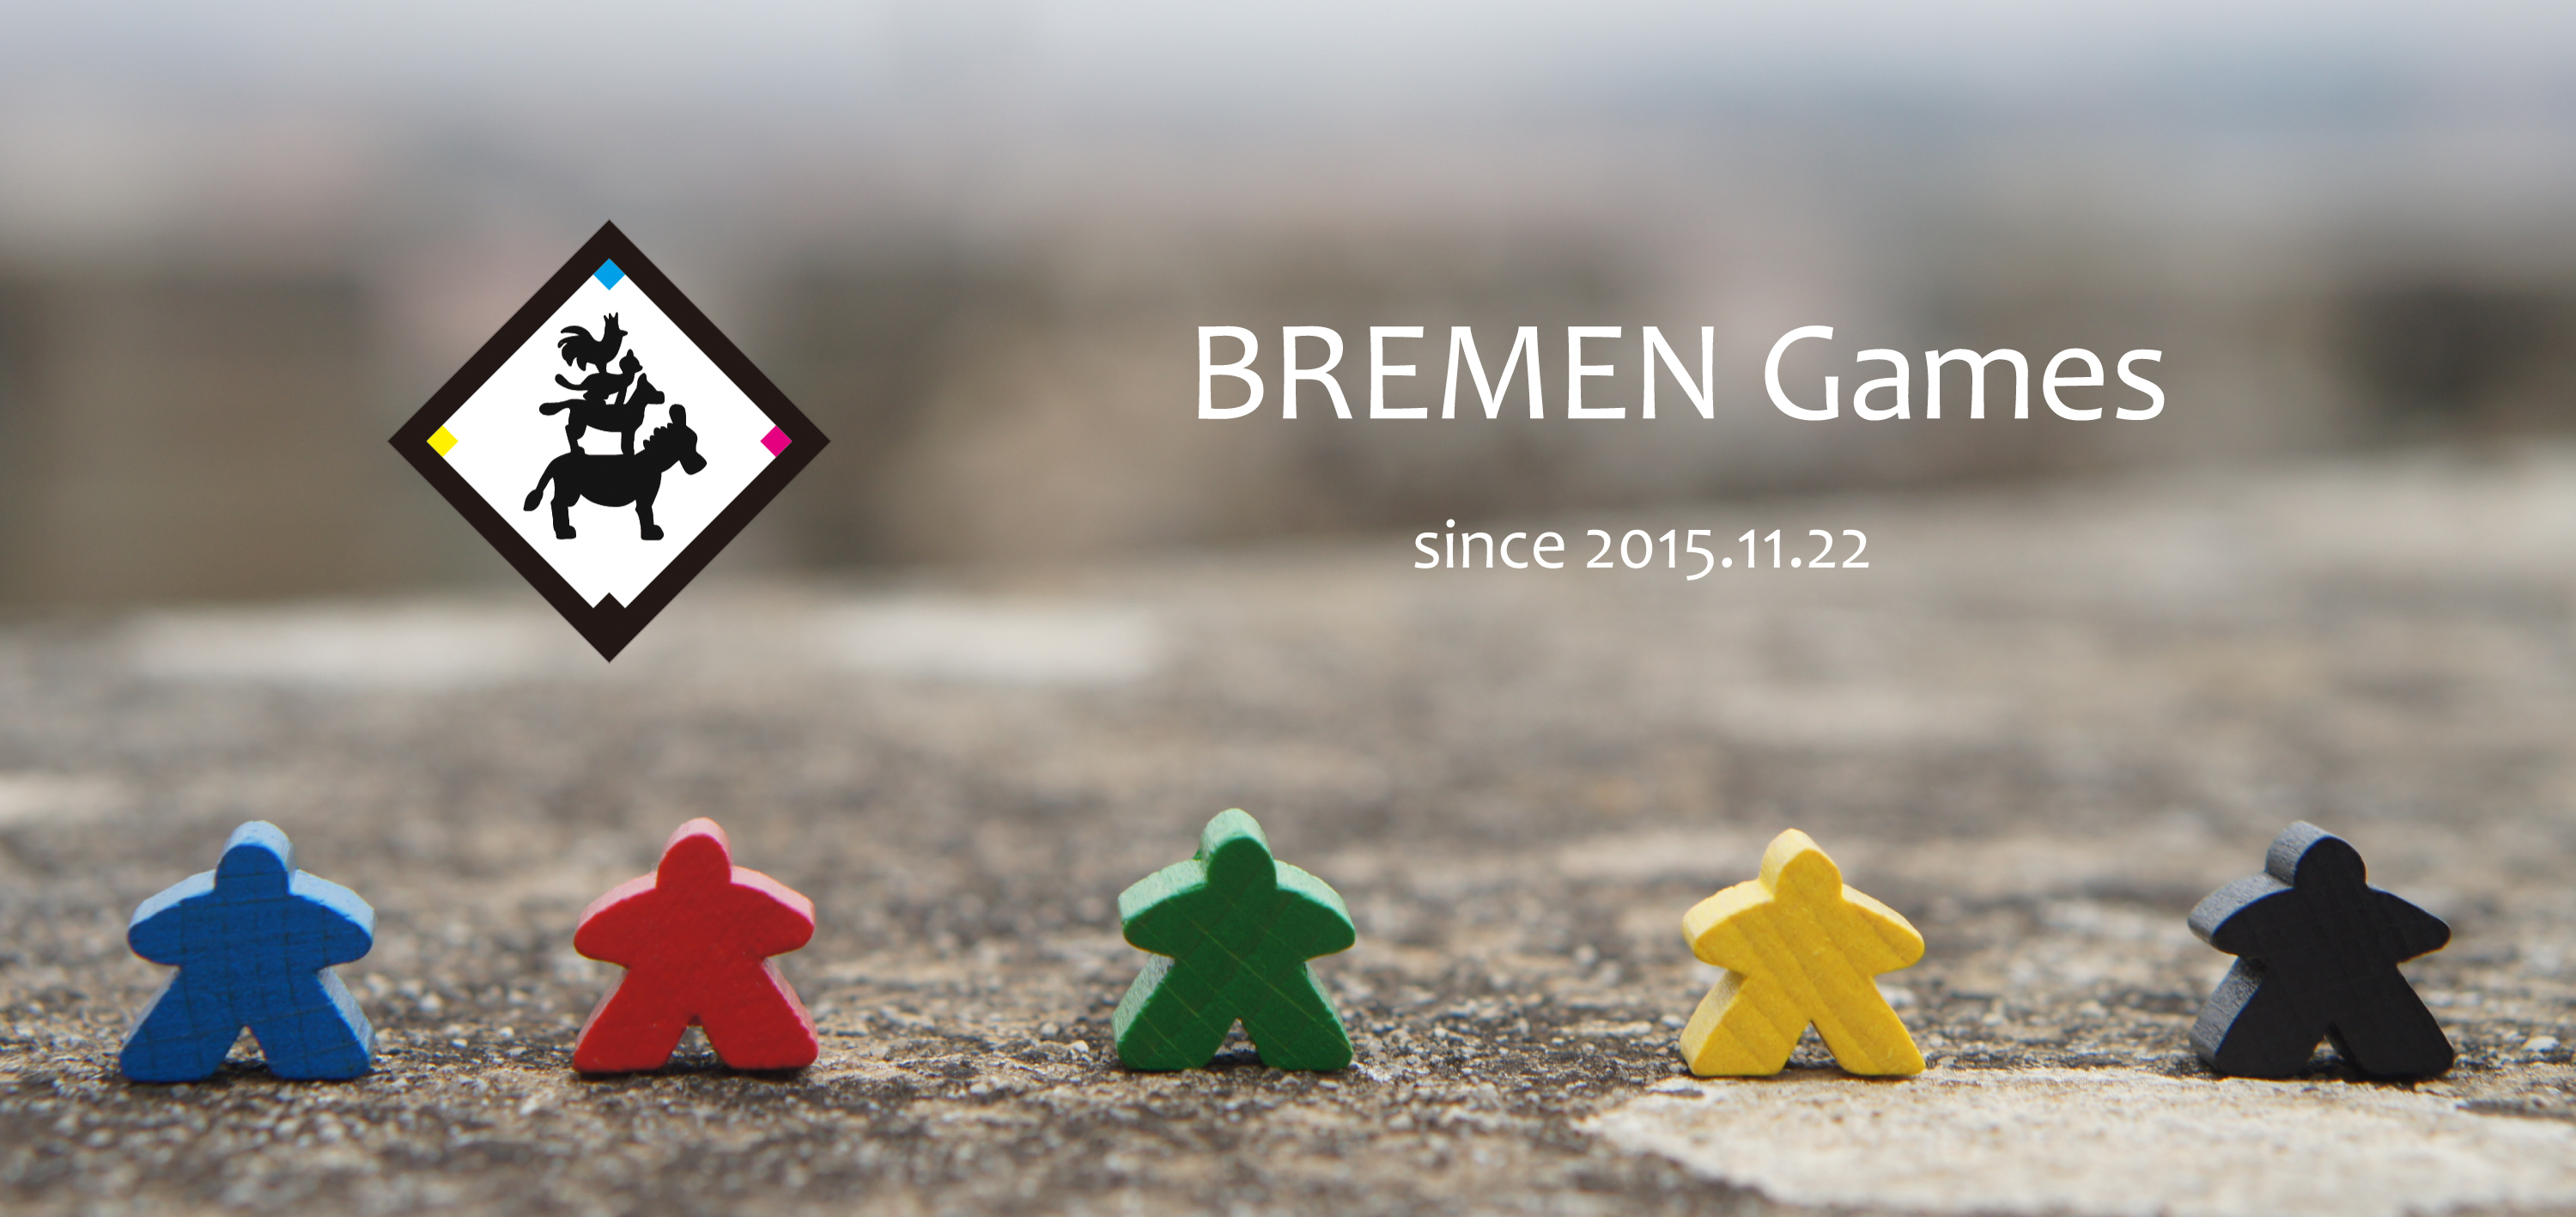 BREMEN Games